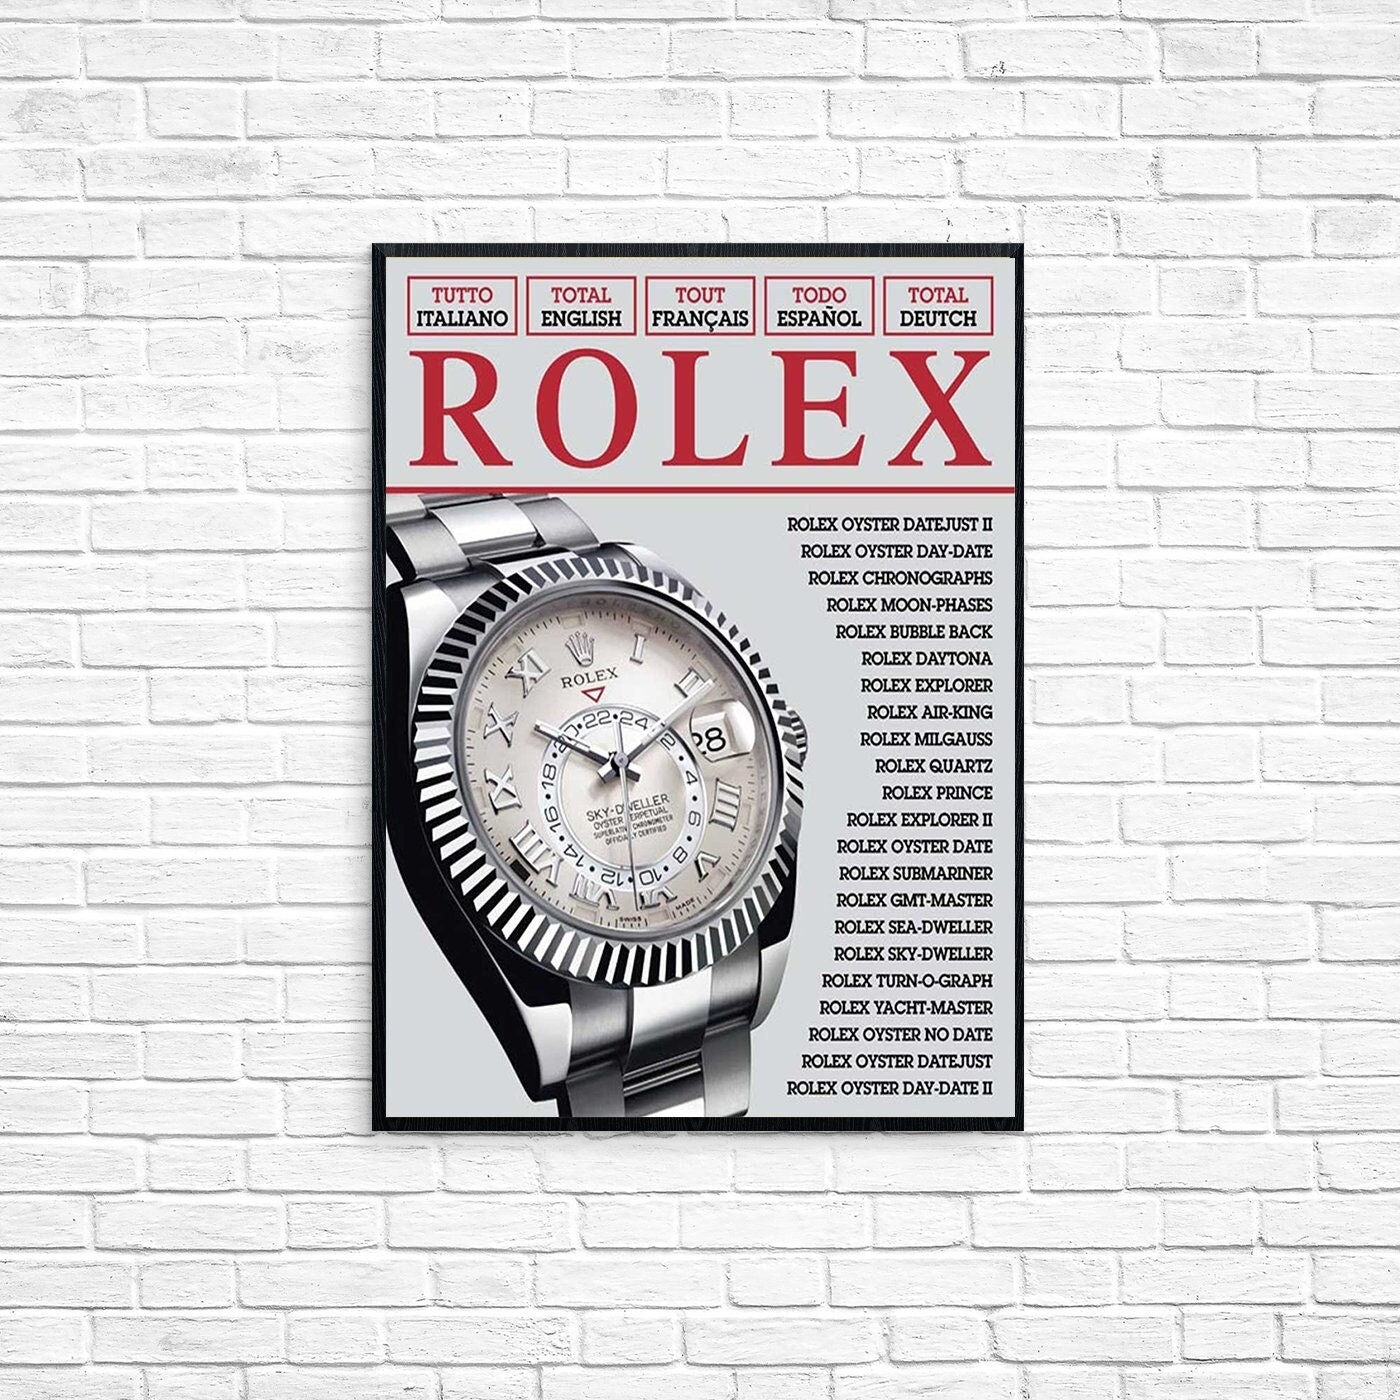 Rolex cadeau - Etsy France